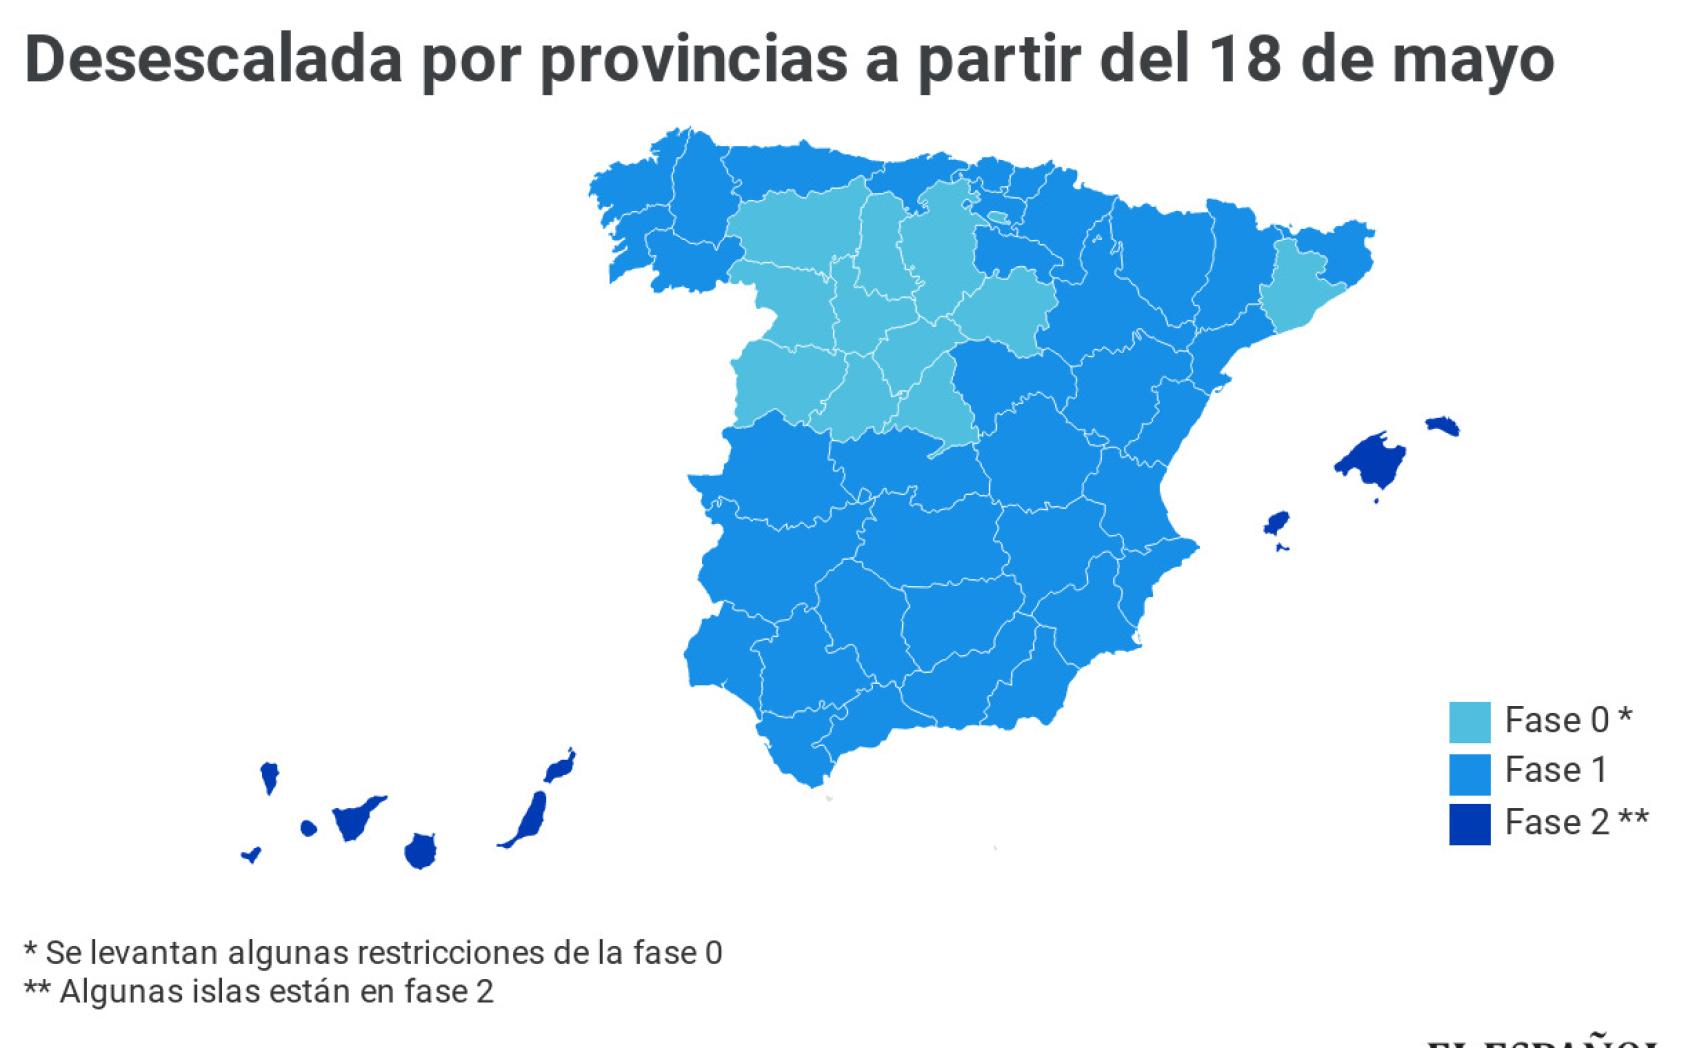 Toda España avanza a Fase 1 menos Madrid, Barcelona y zonas de Castilla y León